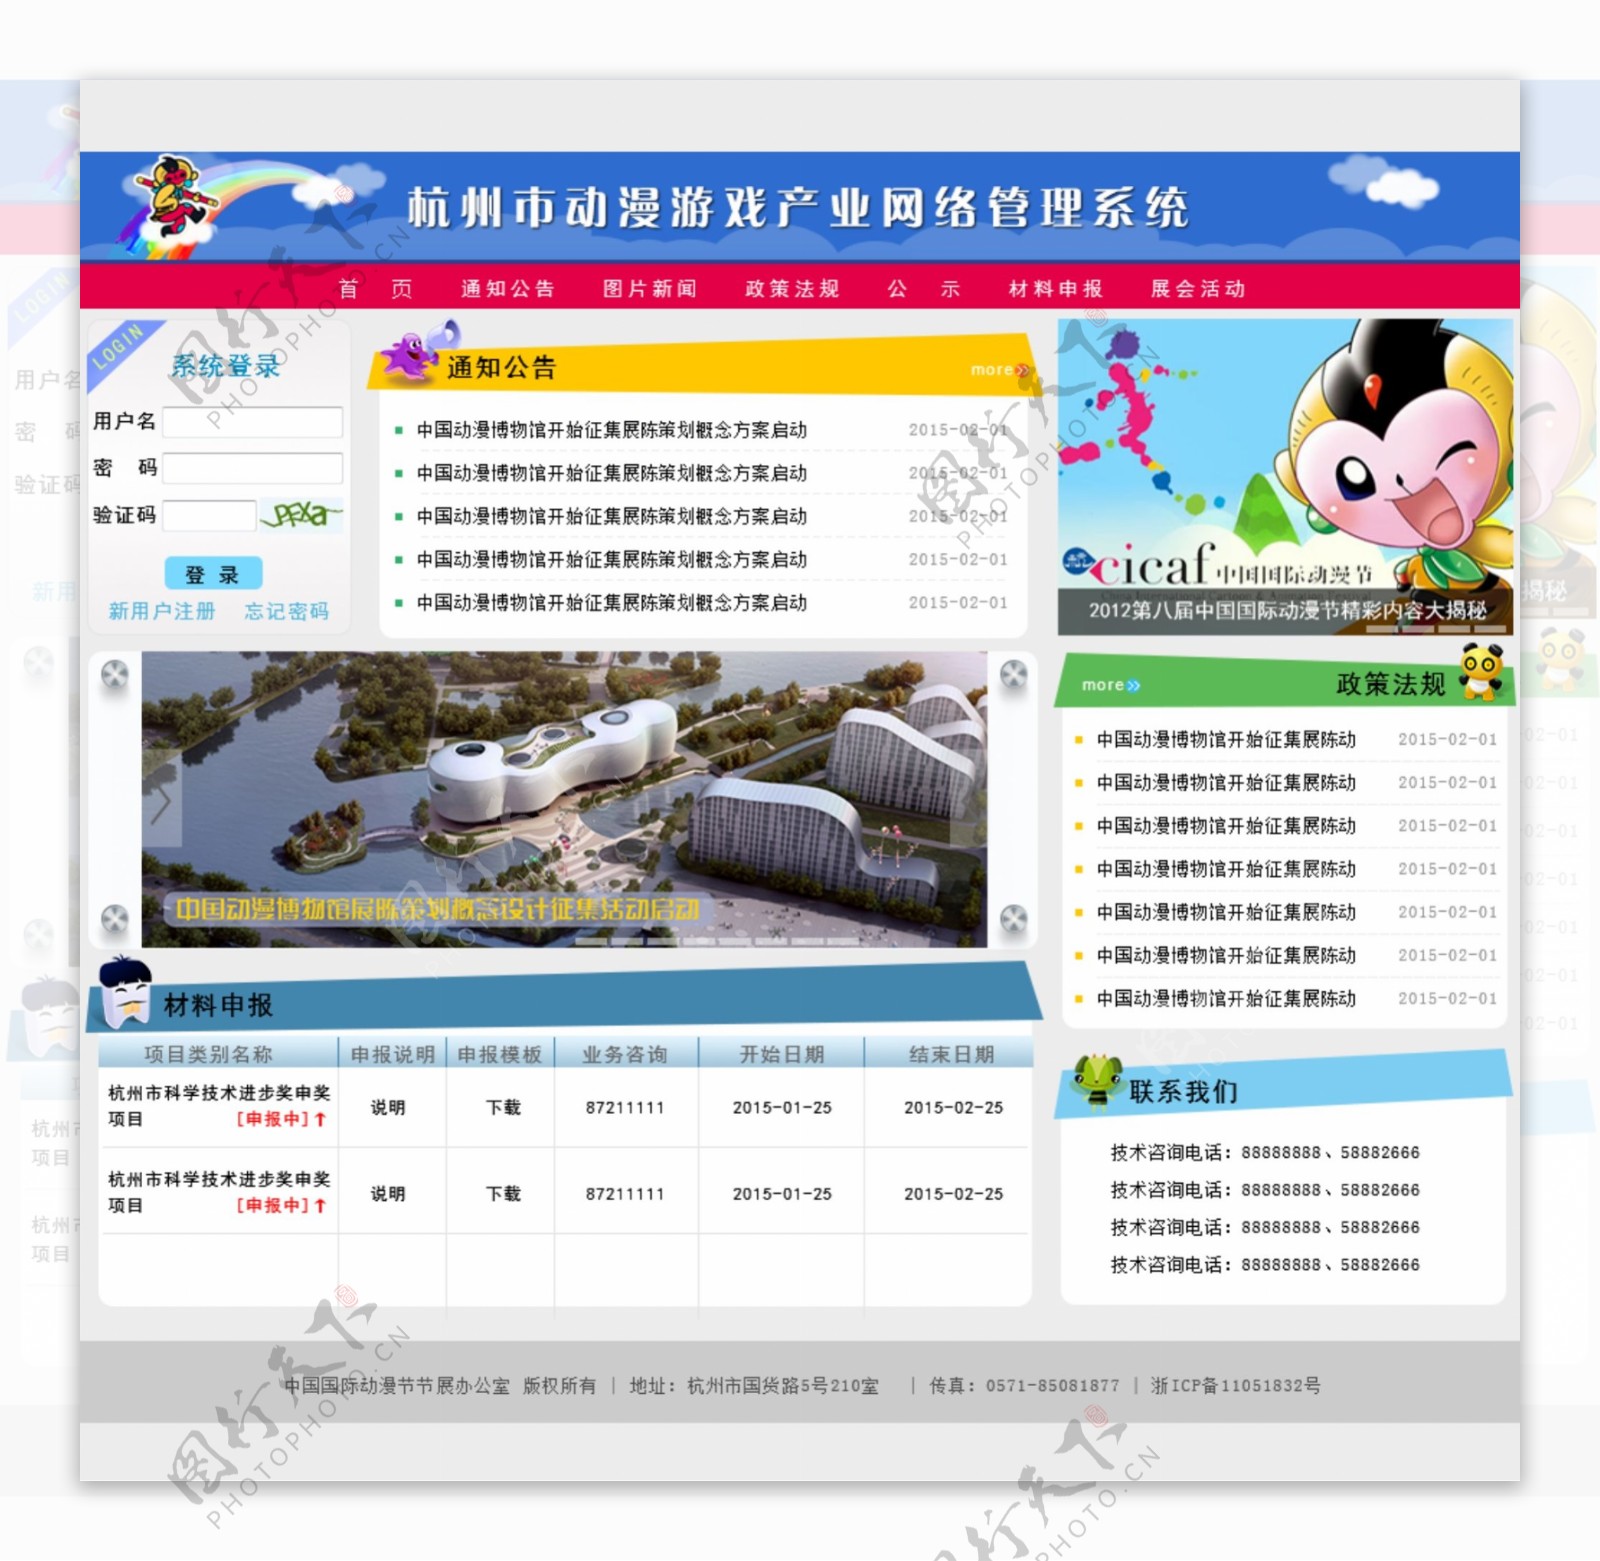 杭州动漫网络管理系统高清原图下载